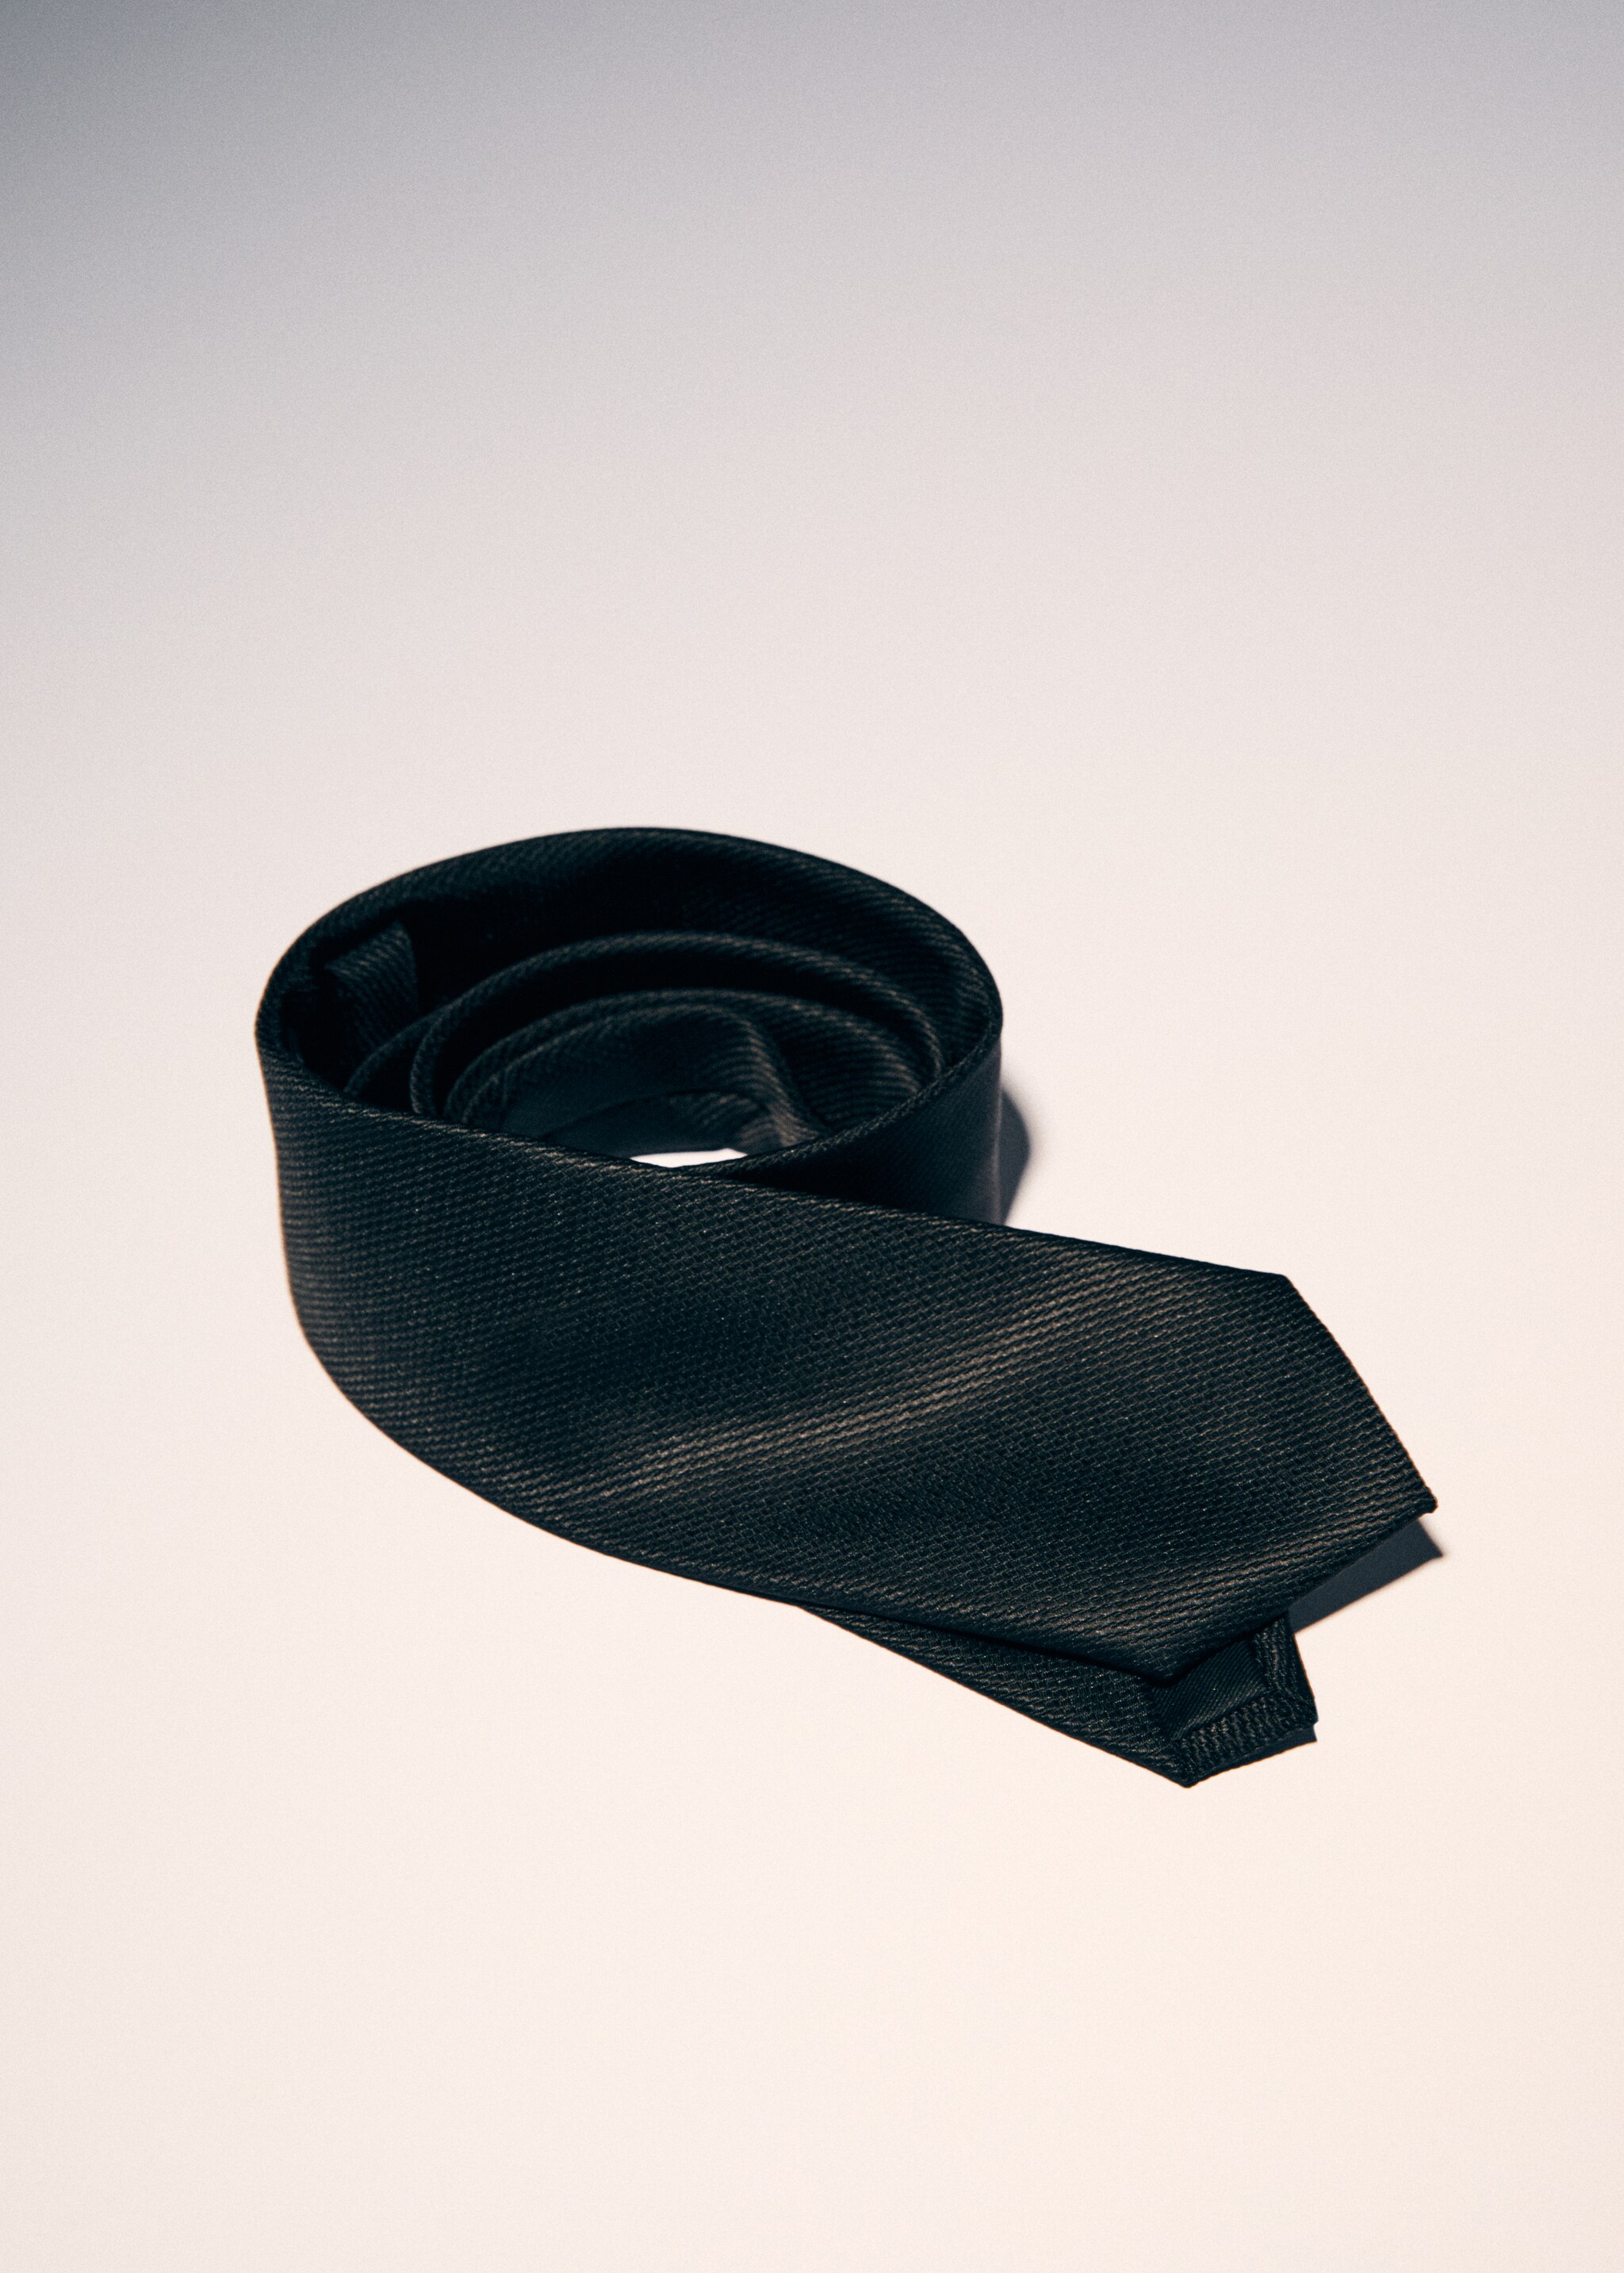 ربطة عنق منظمة مقاومة للتجعد - تفاصيل المنتج 9